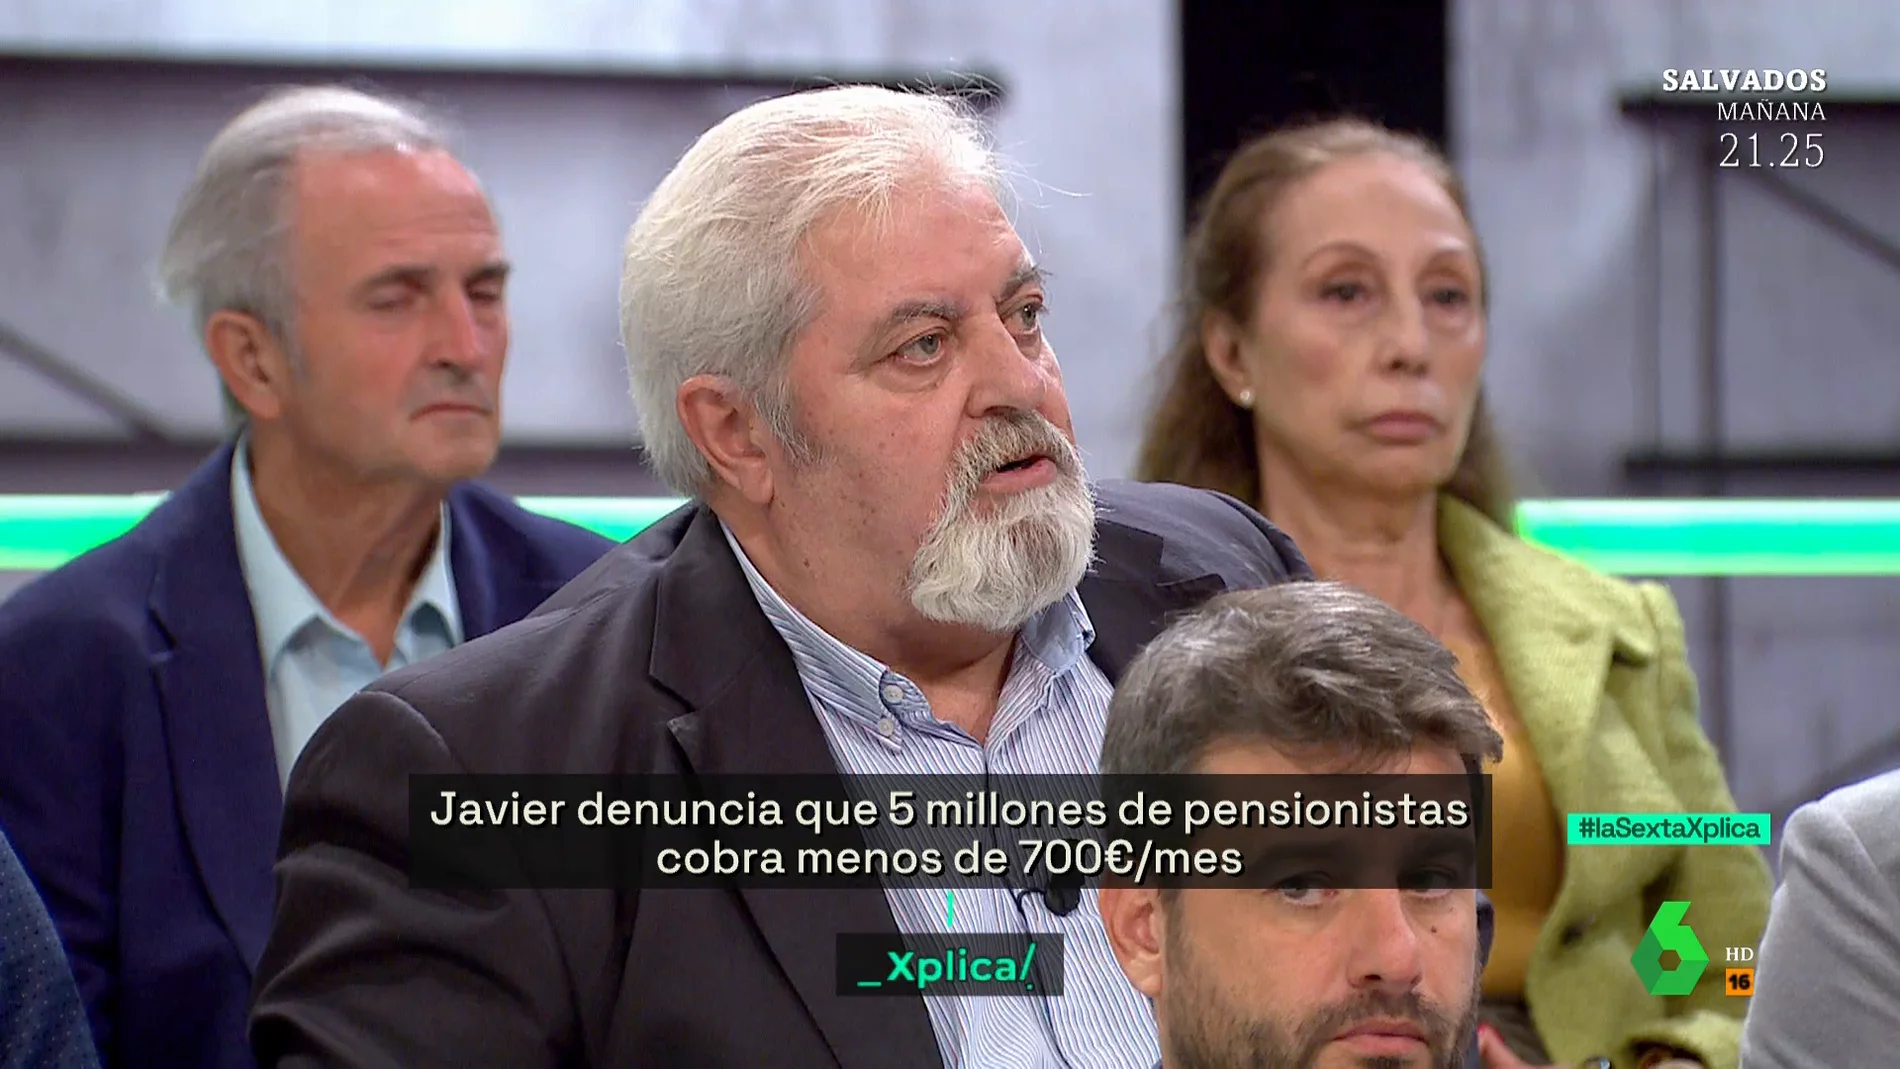 La denuncia de Javier, pensionista: "He visto a personas comprar carcasas de pollo y hacerlas al ajillo"